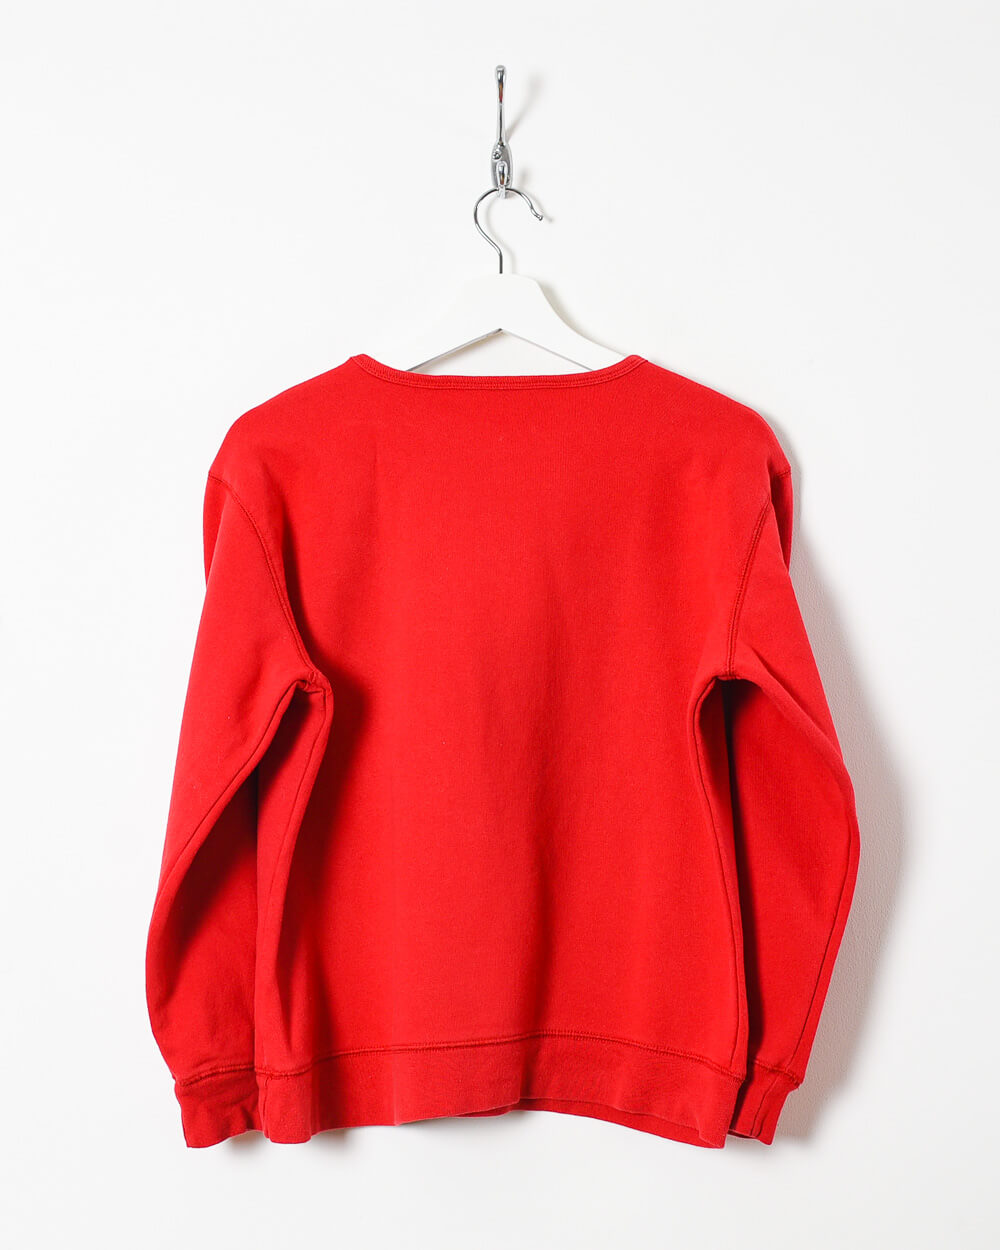 Red Tommy Hilfiger Women's Sweatshirt - Medium